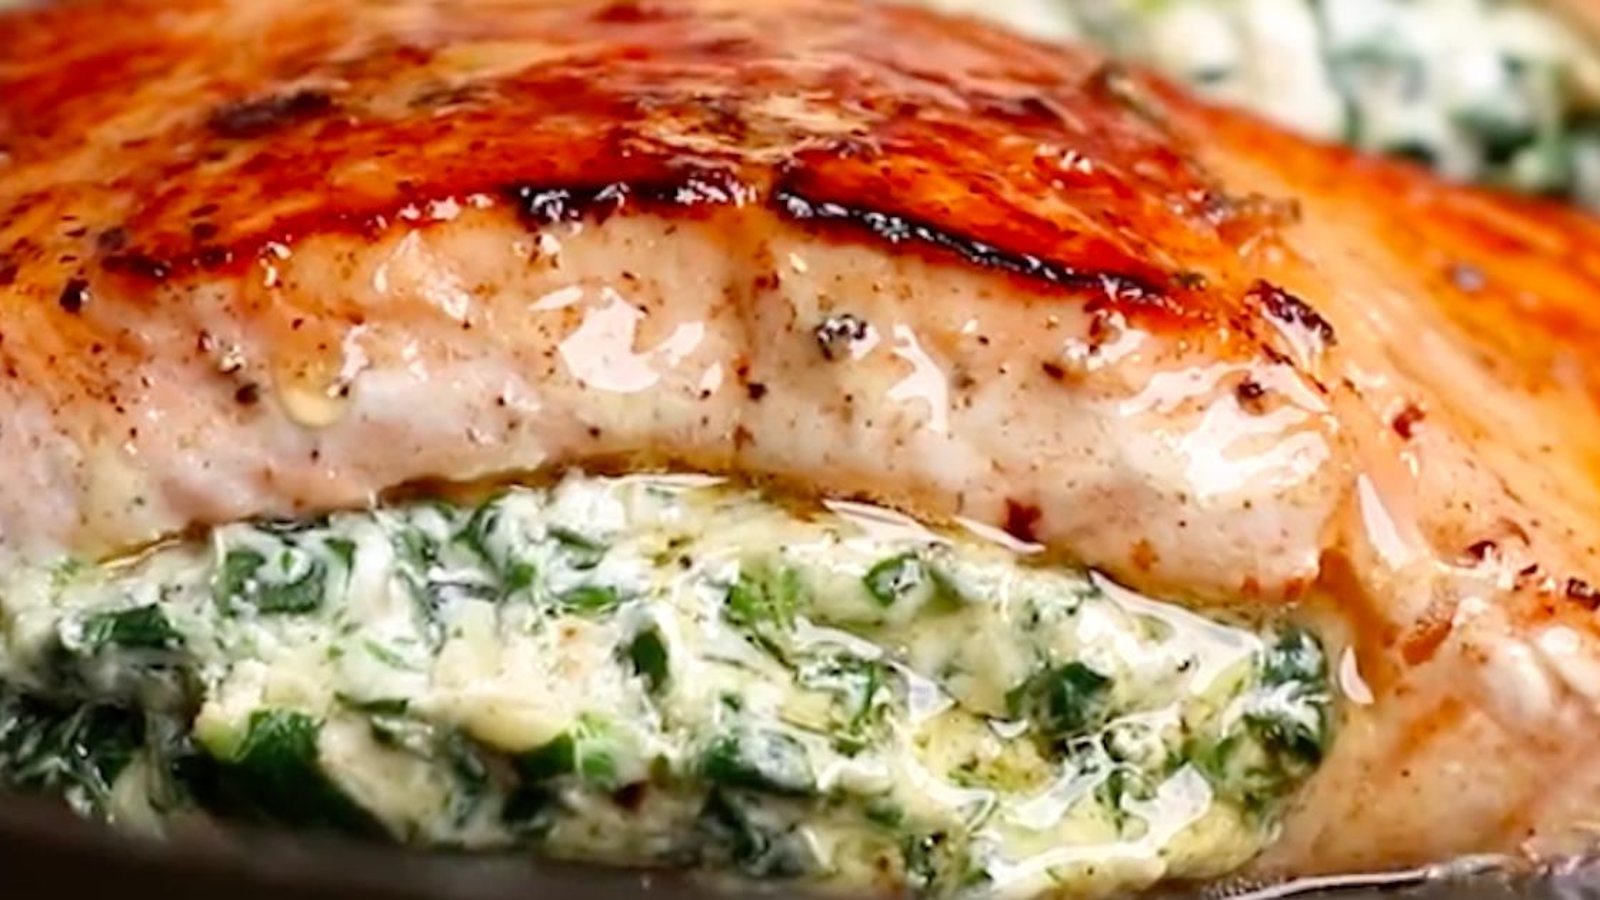 Ce saumon farci aux épinards et au fromage crémeux deviendra votre recette de poisson préférée!